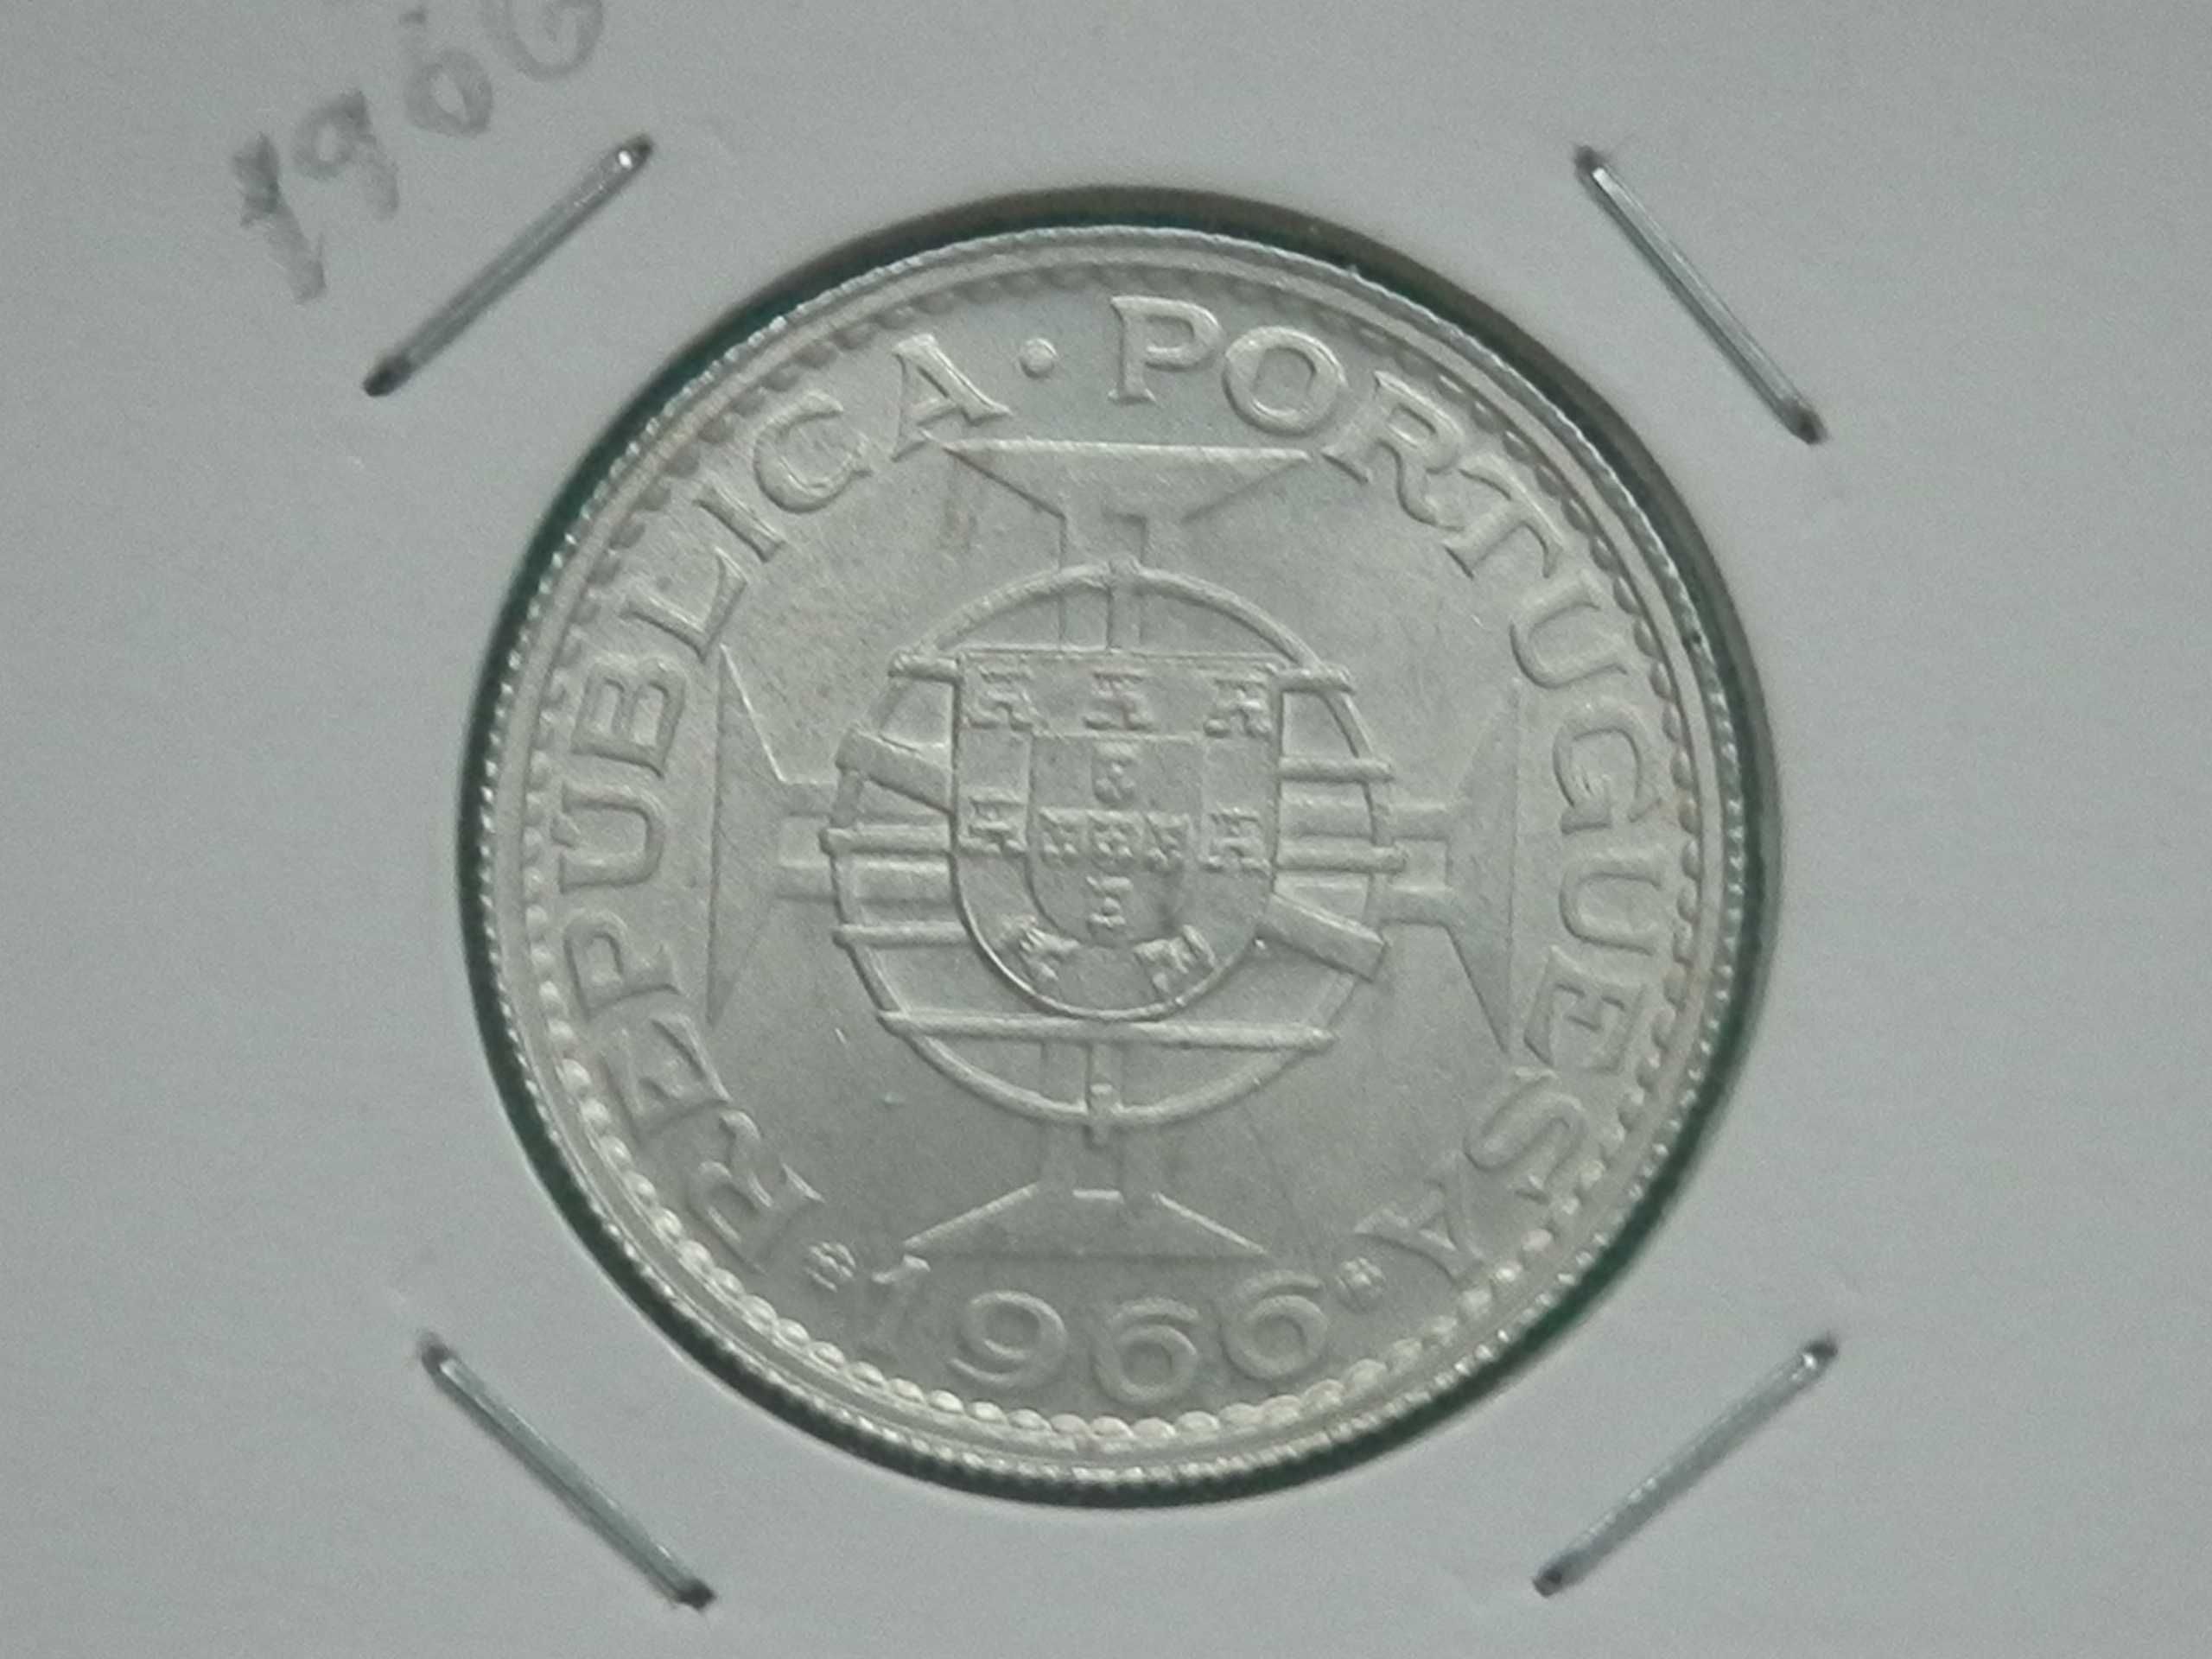 532 - Moçambique: 10$00 escudos 1966 prata, por 9,00